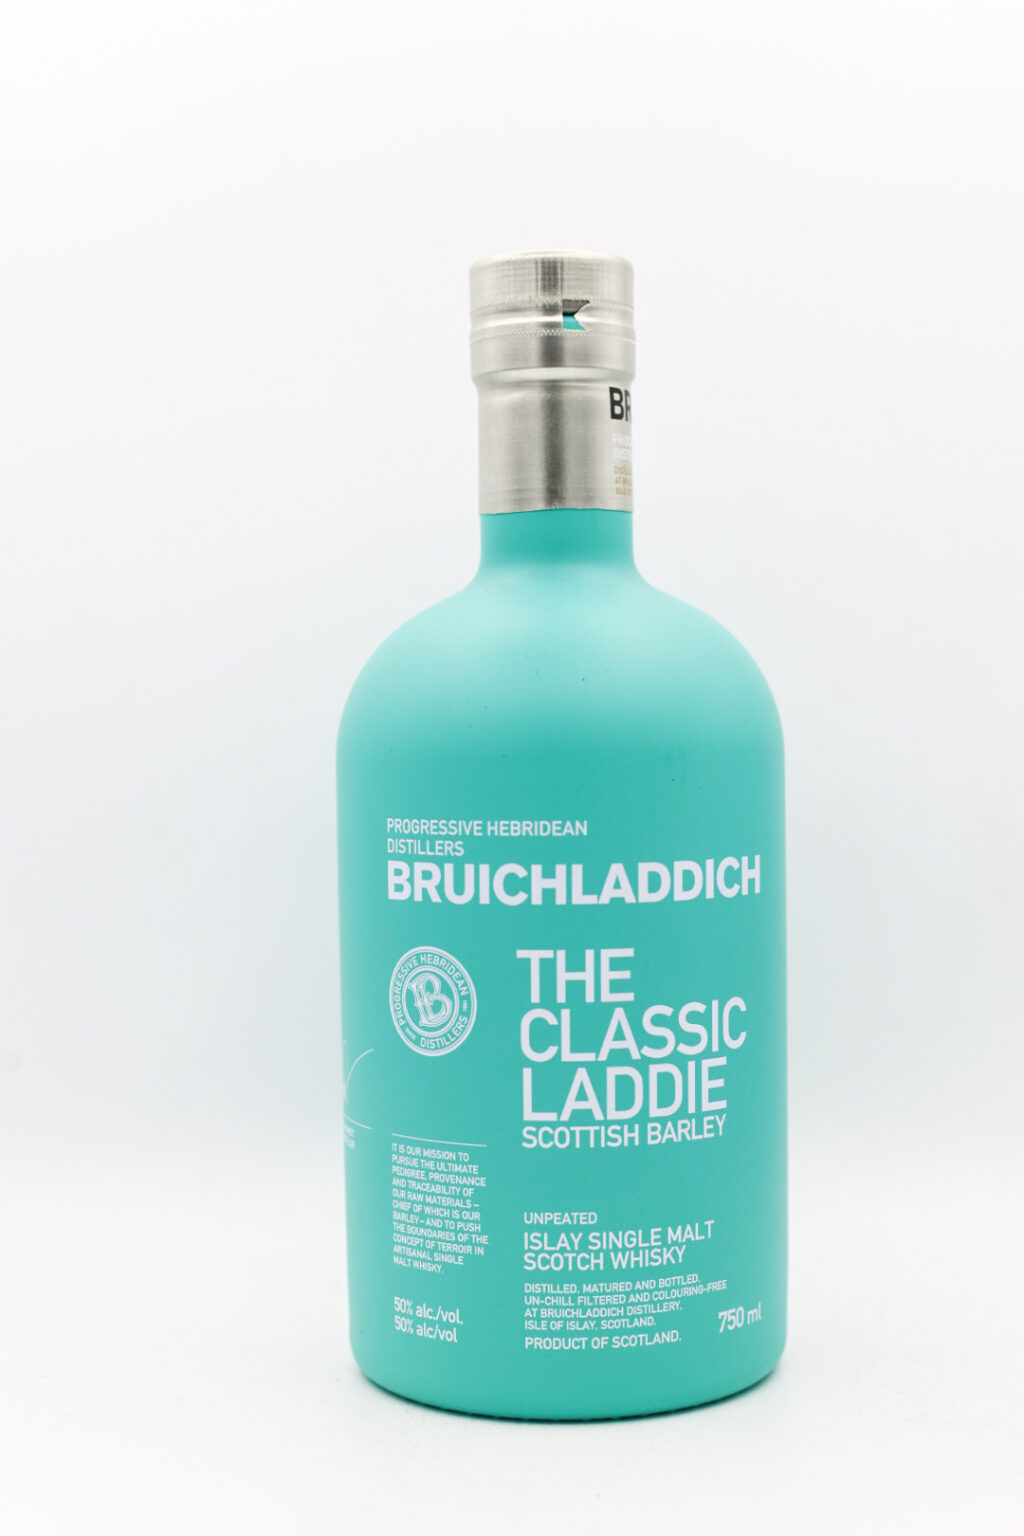 Bruichladdich The Classic Laddie 750ml